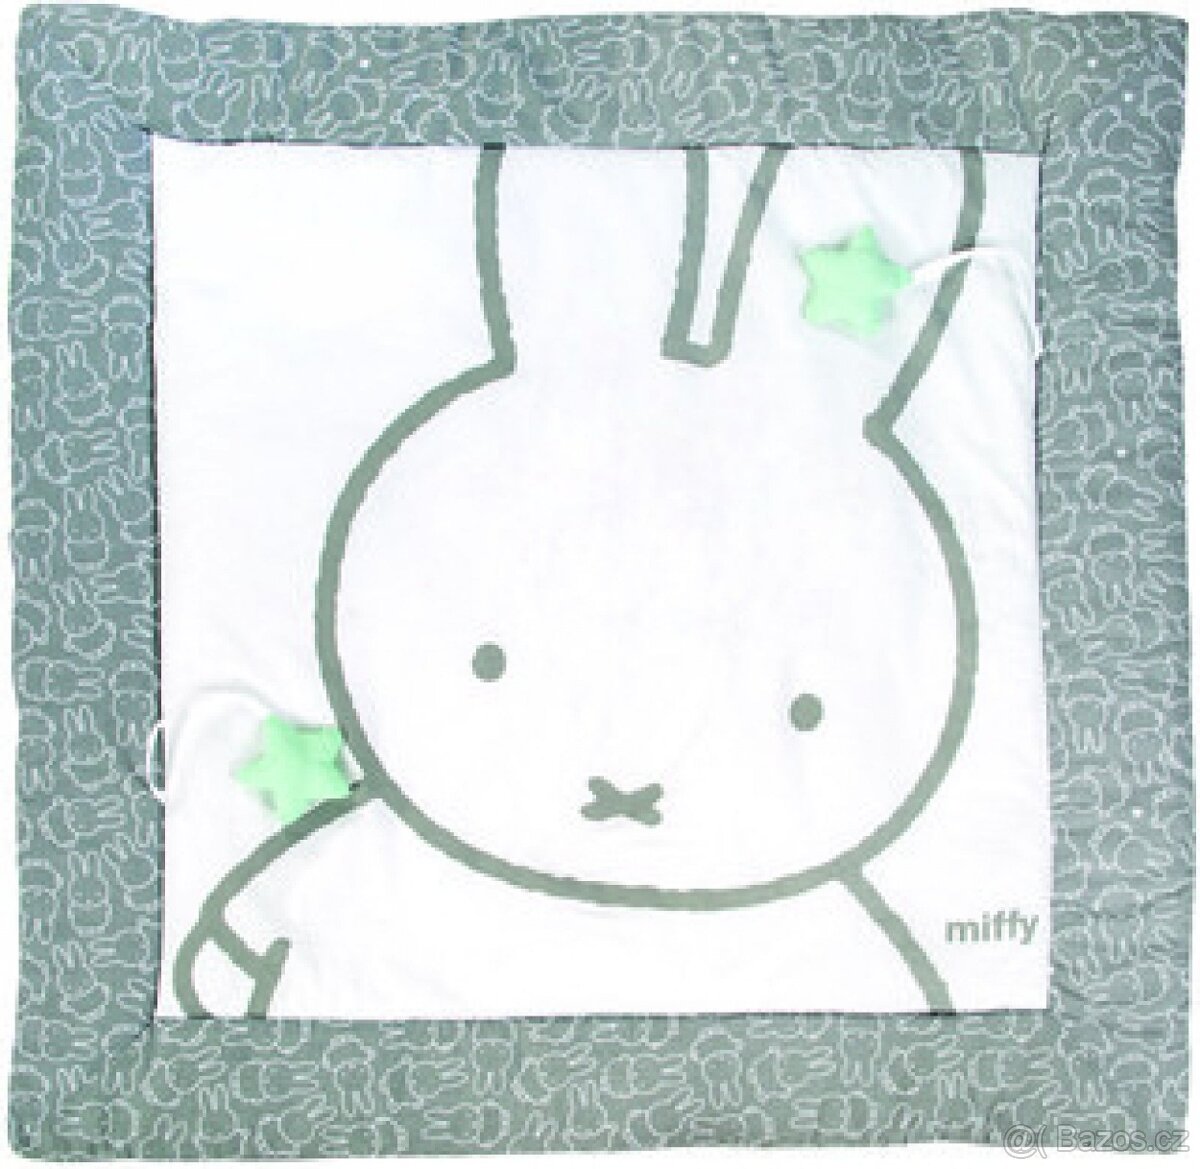 Roba Miffy nová hrací deka 100 cm x 100 cm bílo šedá